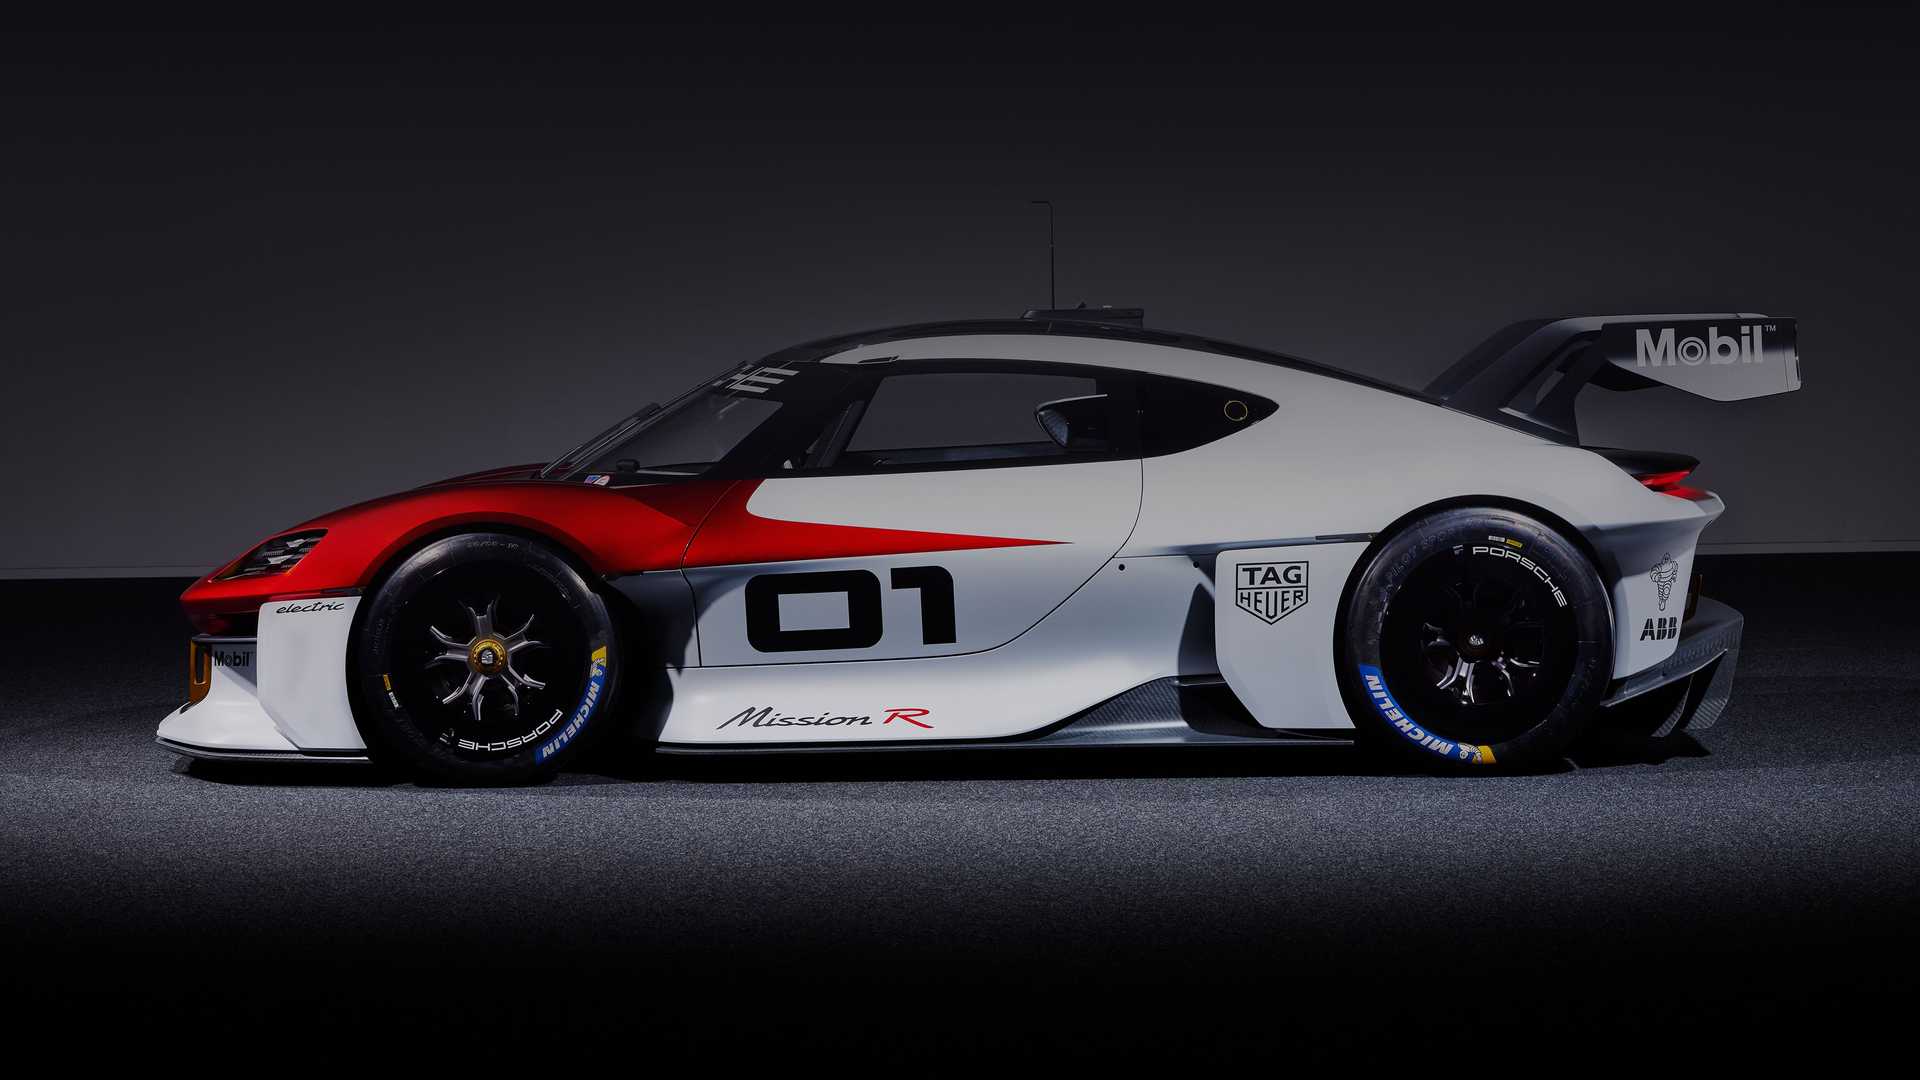 نمای کناری خودروی الکتریکی مفهومی پورشه میشن آر / Porsche Mission R Concept EV